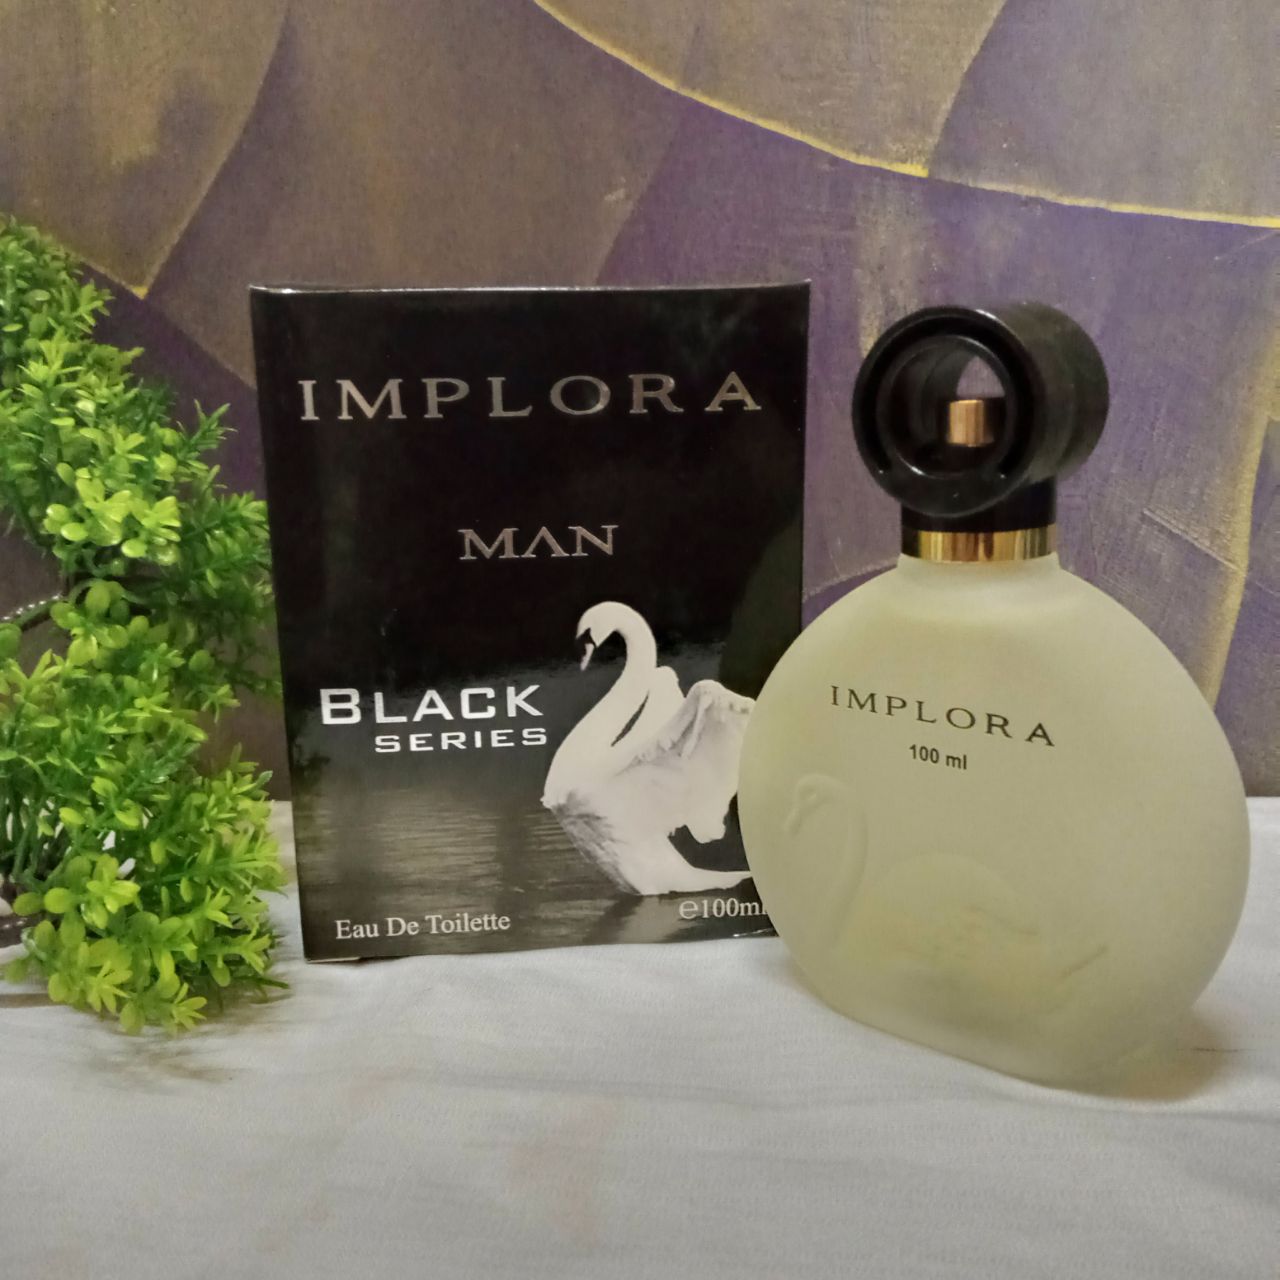 ini adalah Implora Parfum Angsa Black Man, brand: Implora, age_group: all ages, gender: female